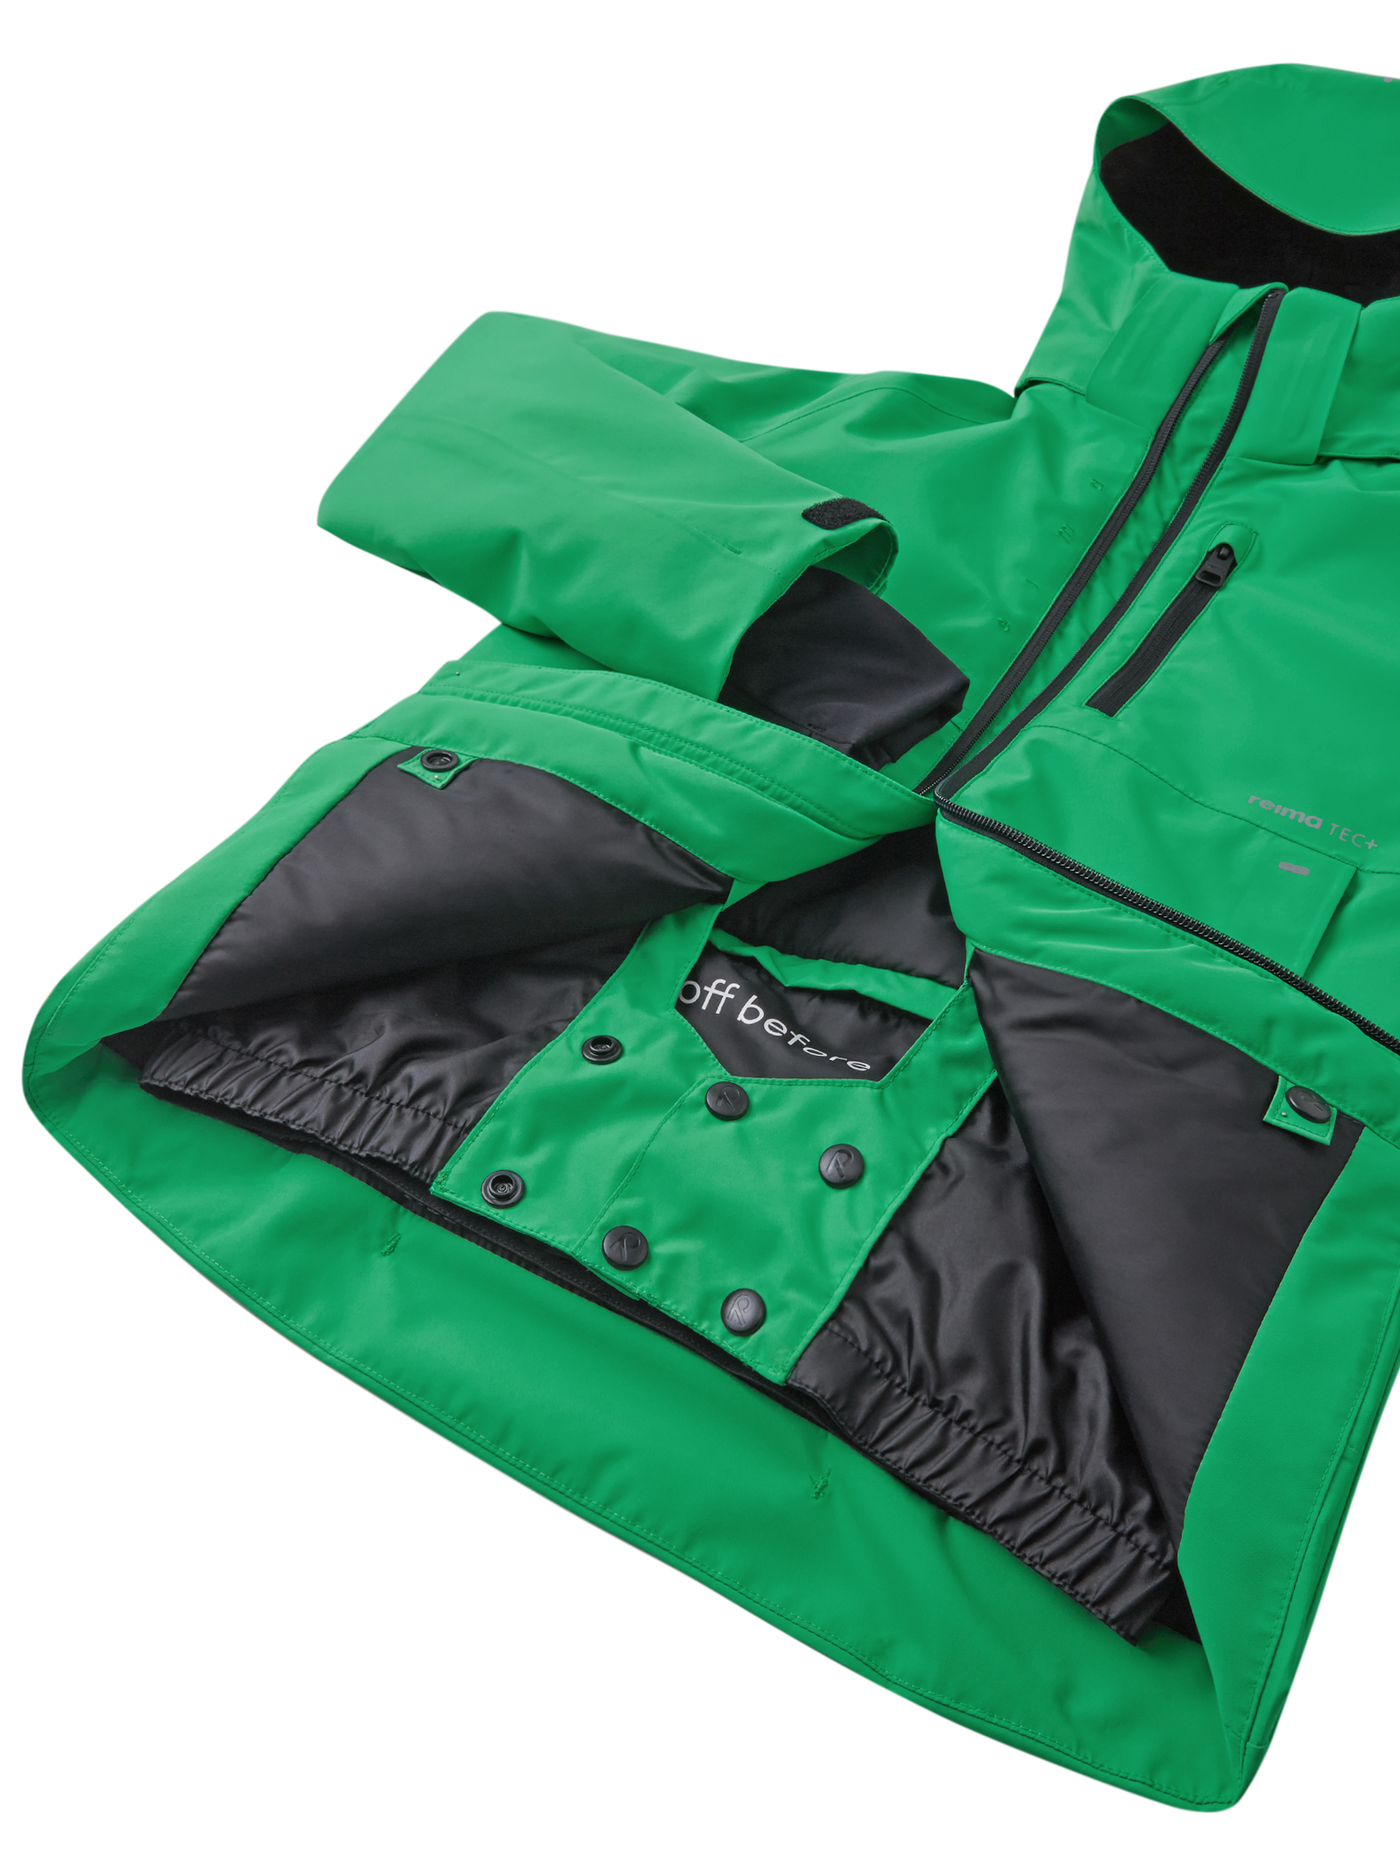 Reiman Reimatec Tieten -laskettelutakki vihreässä sävyssä lähikuvassa takin etuosa ja lumipussi